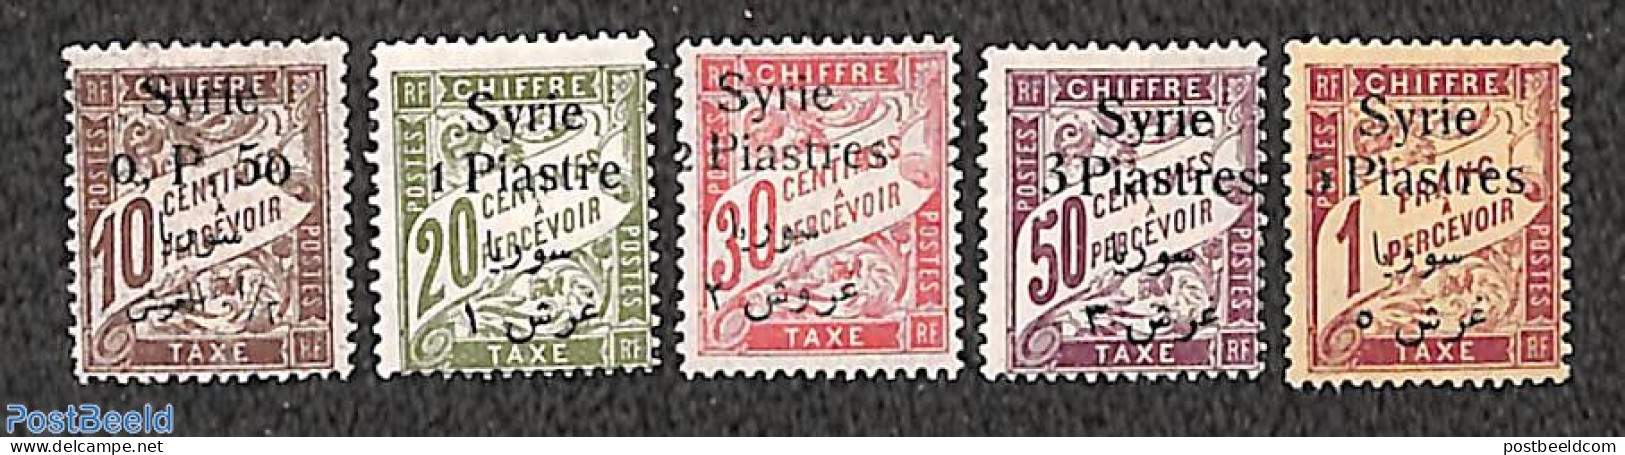 Syria 1924 Postage Due 5v, Unused (hinged) - Syrie